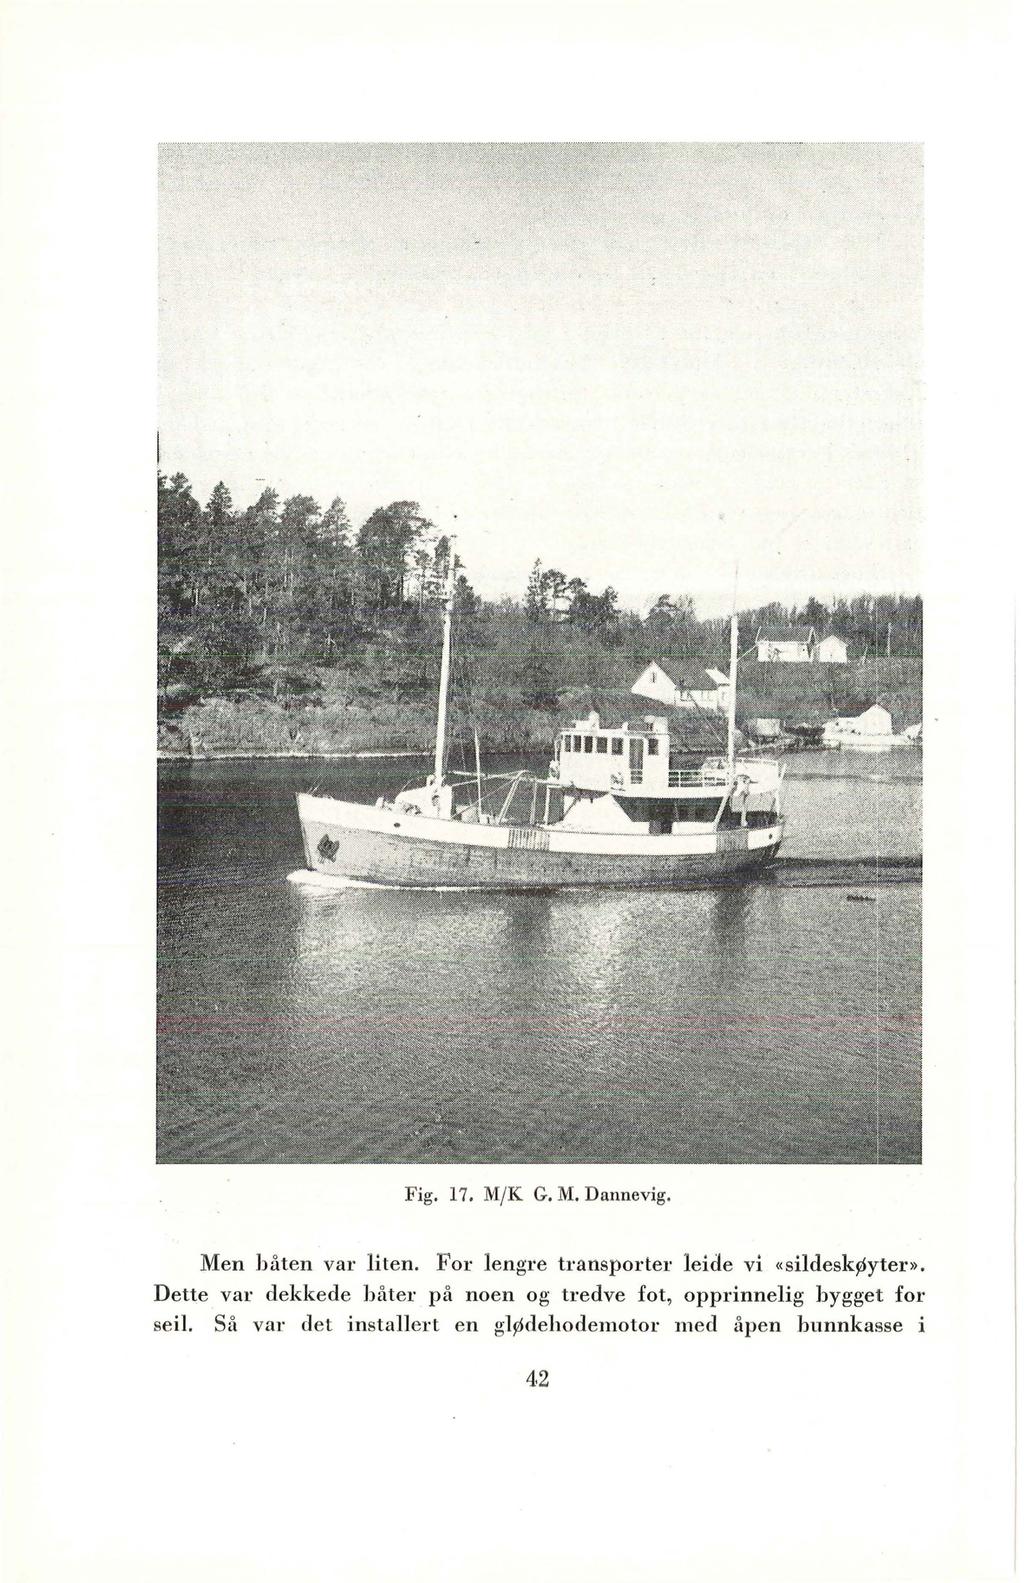 Fig. 17. M/K G.M. Dannevig. Men båten var liten. For lengre transporter leide vi «sildeskøyter».